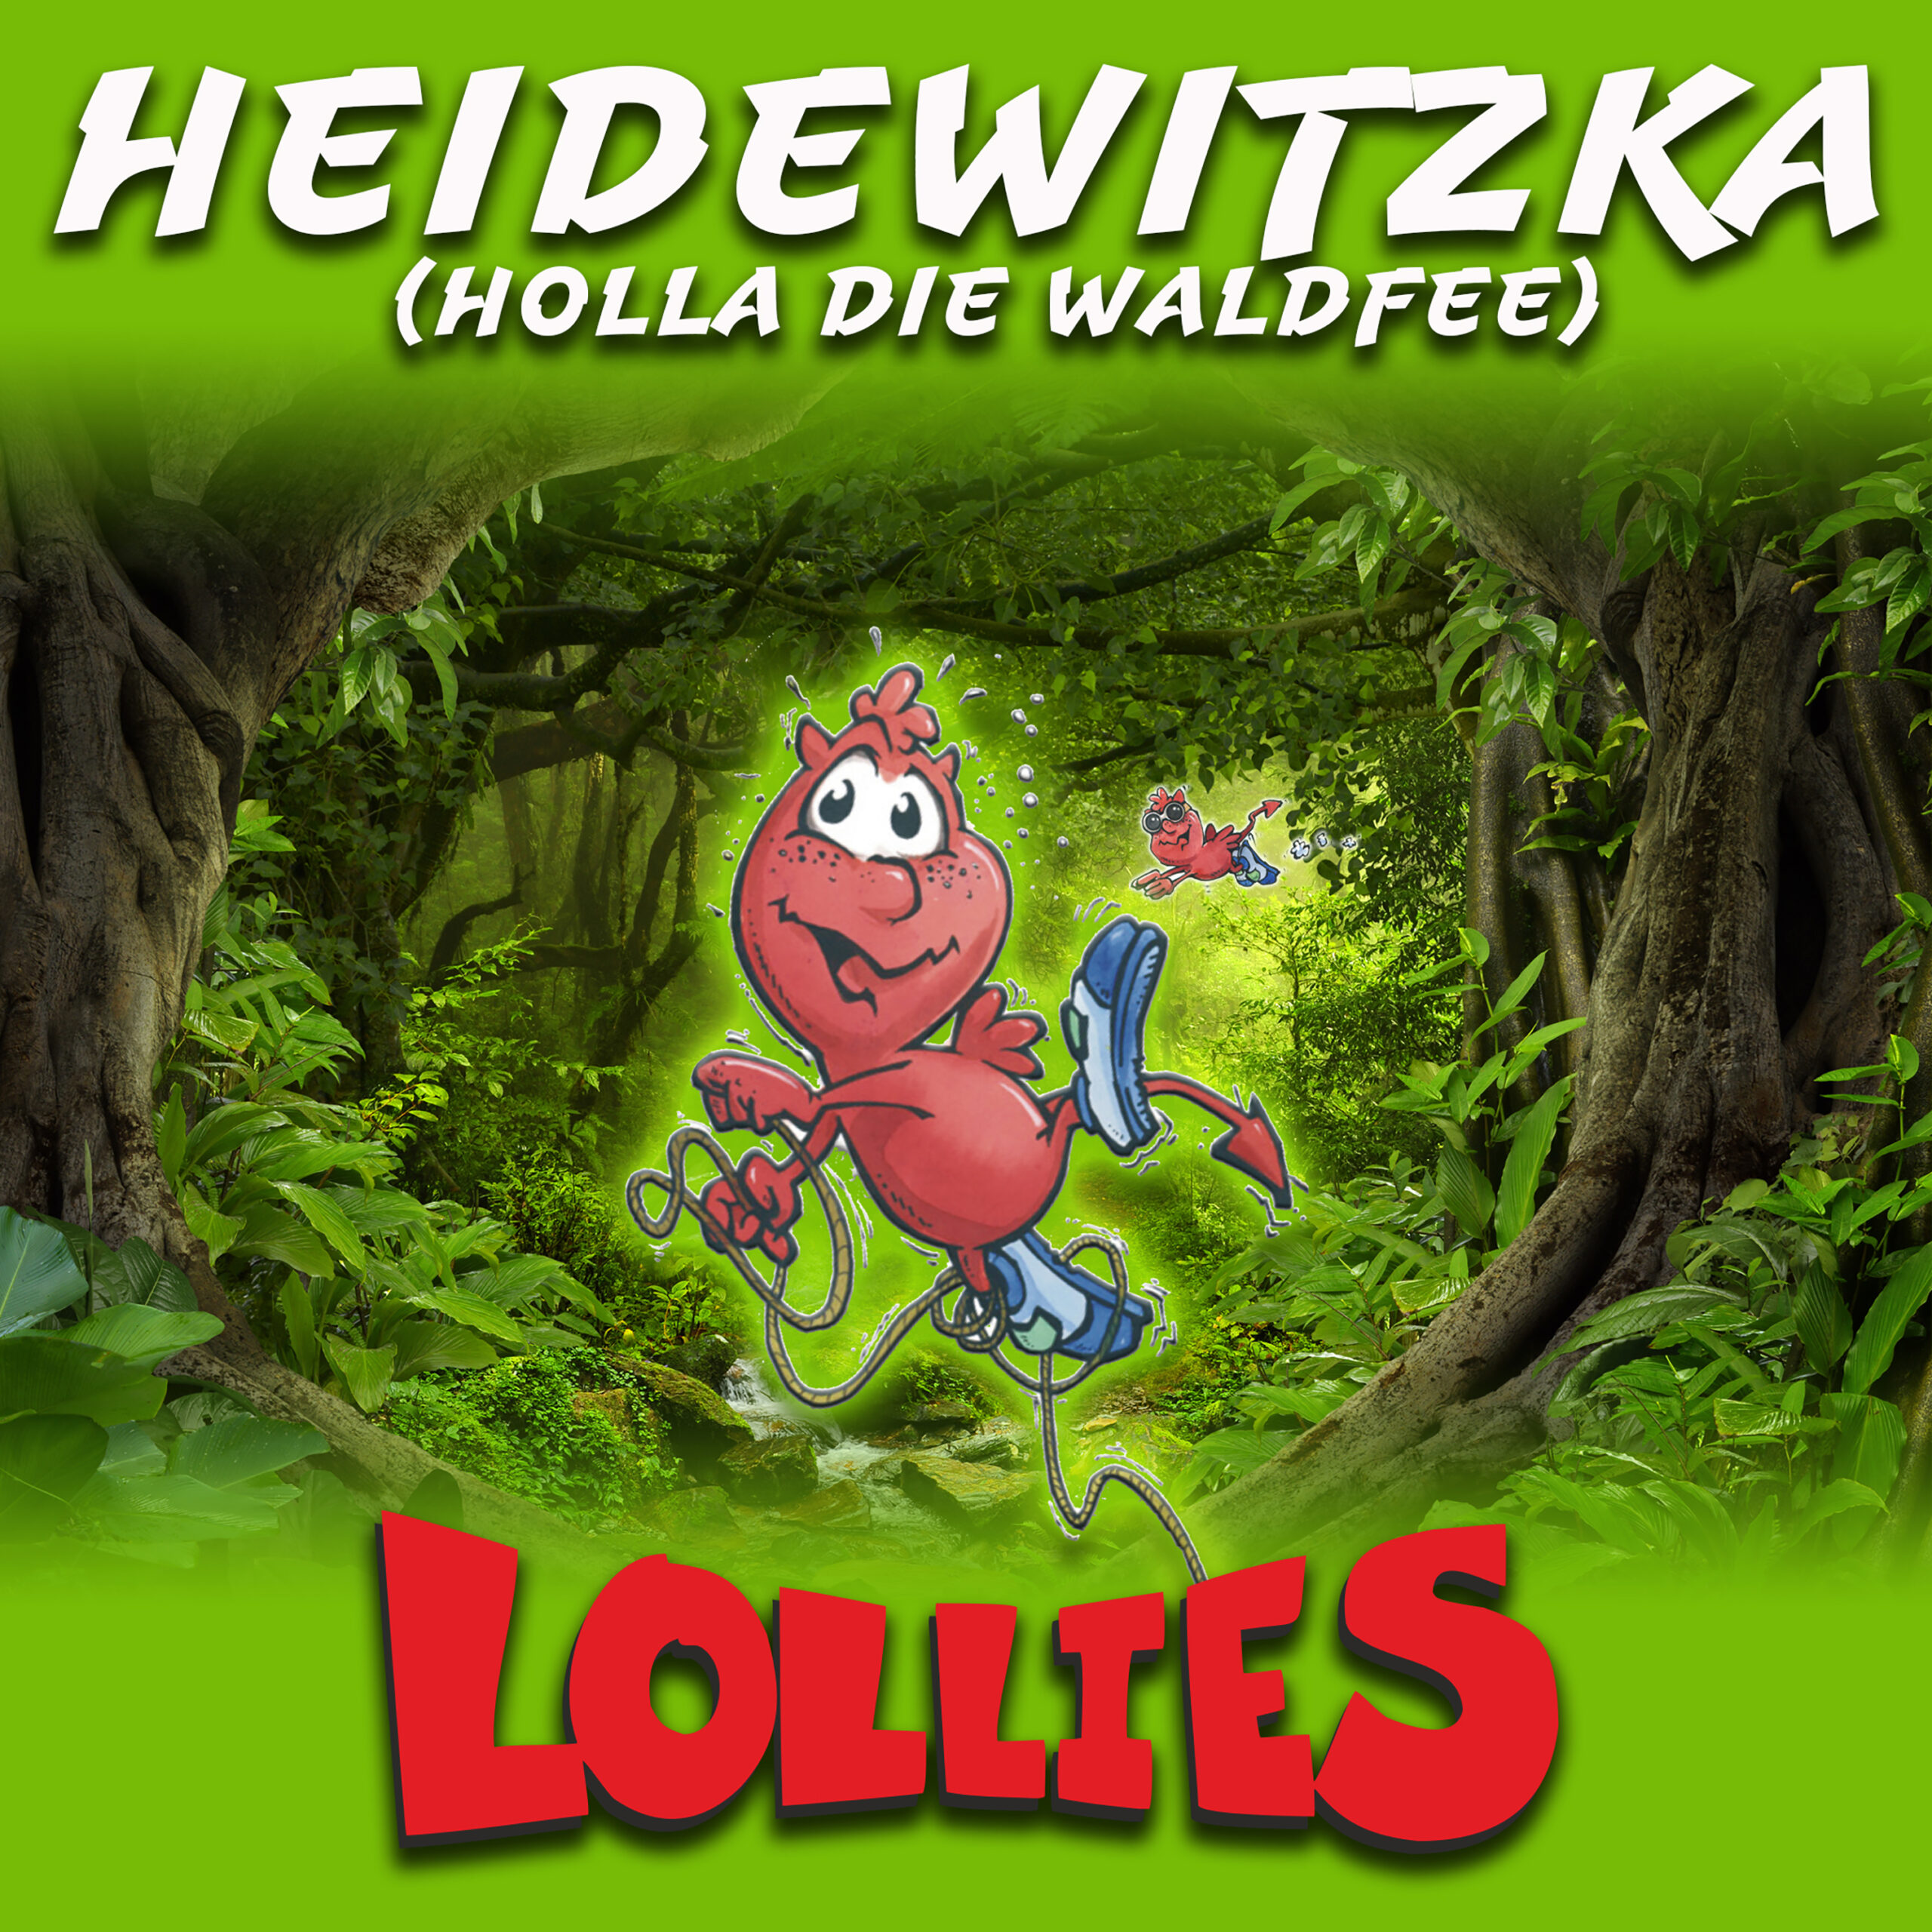 Die Lollies – 30 Jahre! Neuer Hit „Heidewitzka (Holla die Waldfee)“